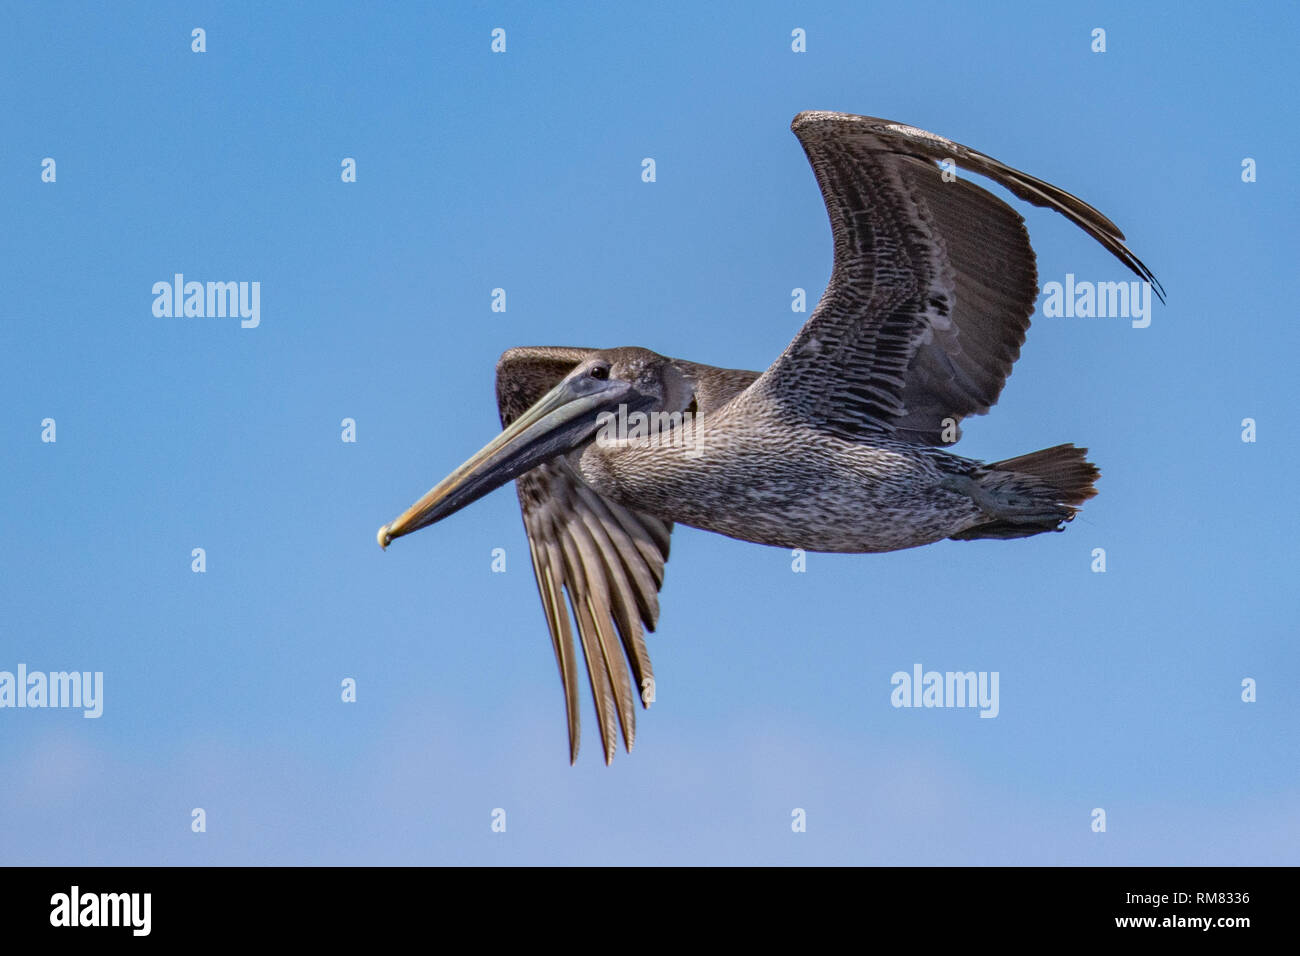 Pelican in flight Stock Photo